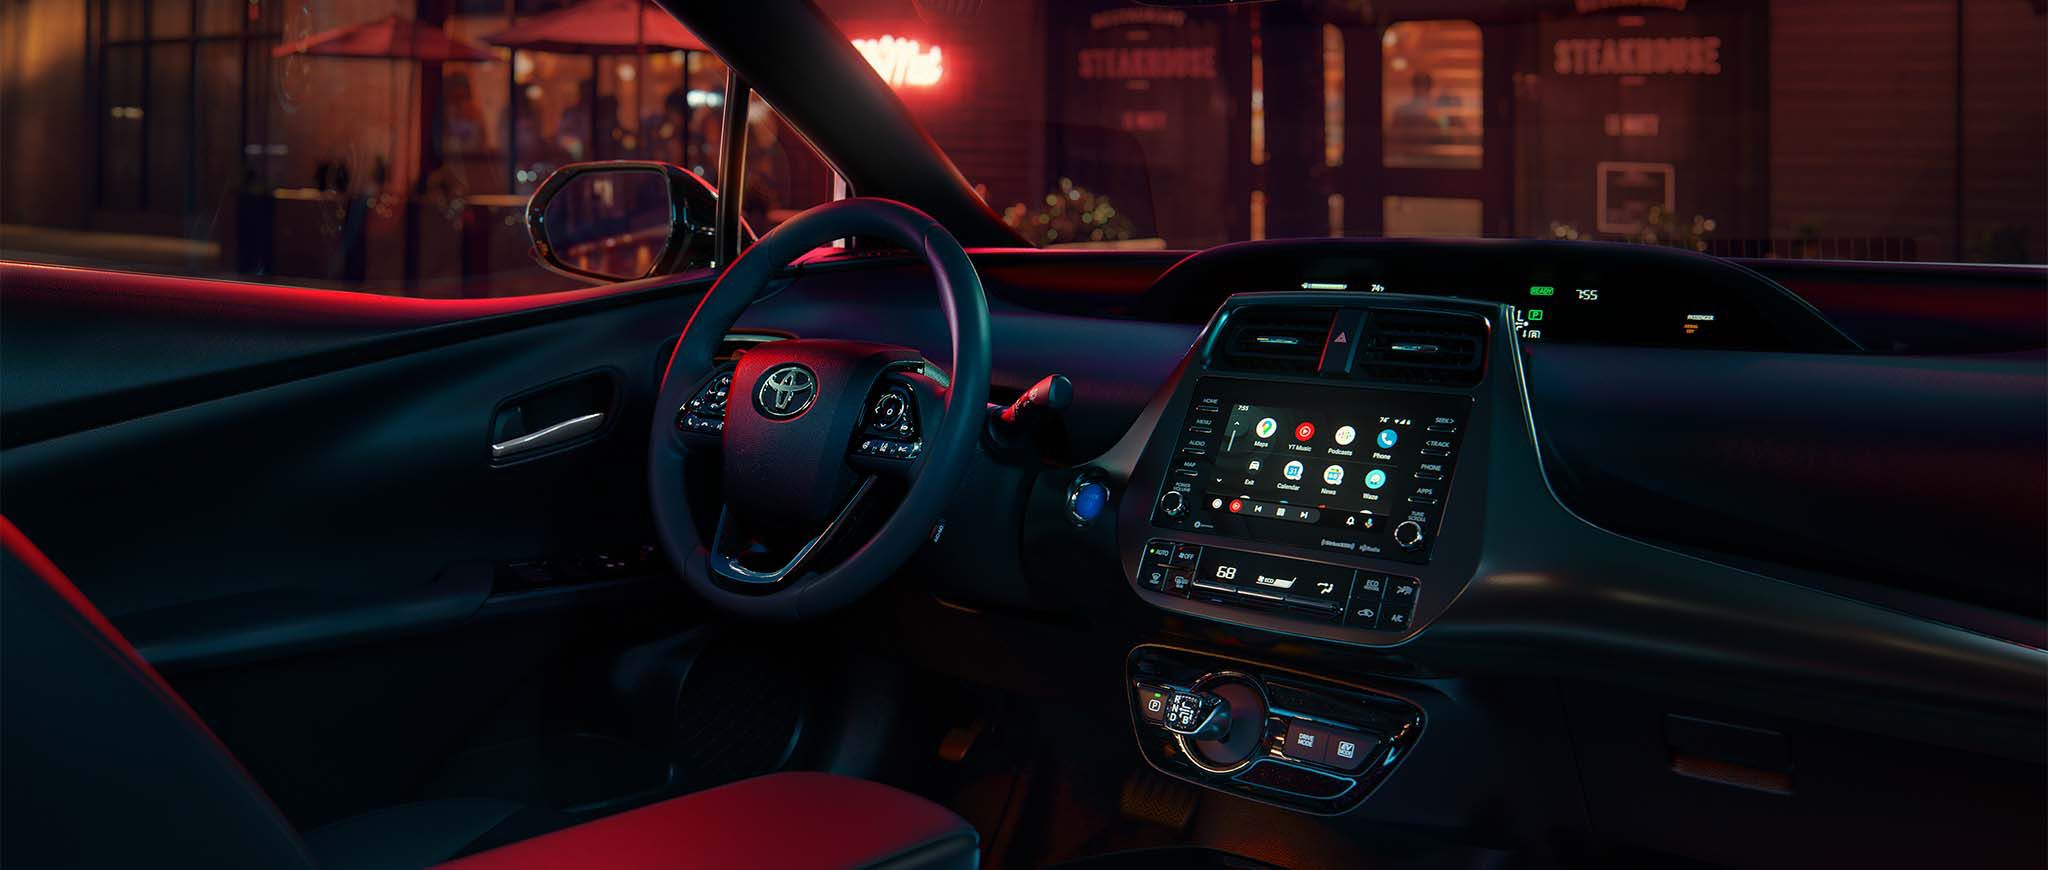 El interior de un Toyota Prius.